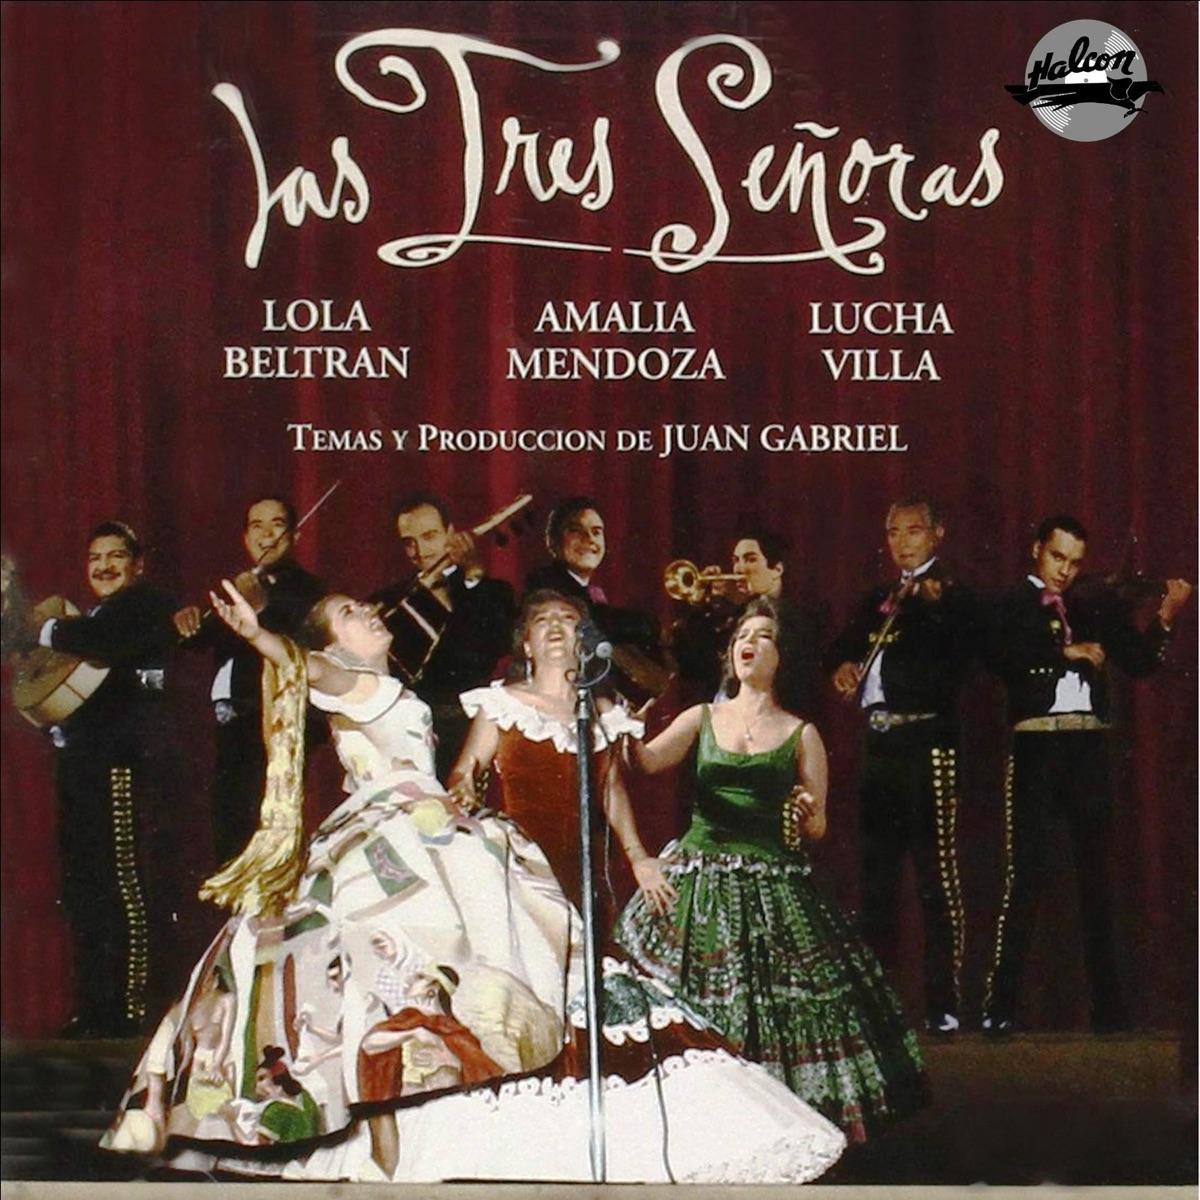 CD Juan Gabirle -las tres señoras 1200x1200bb